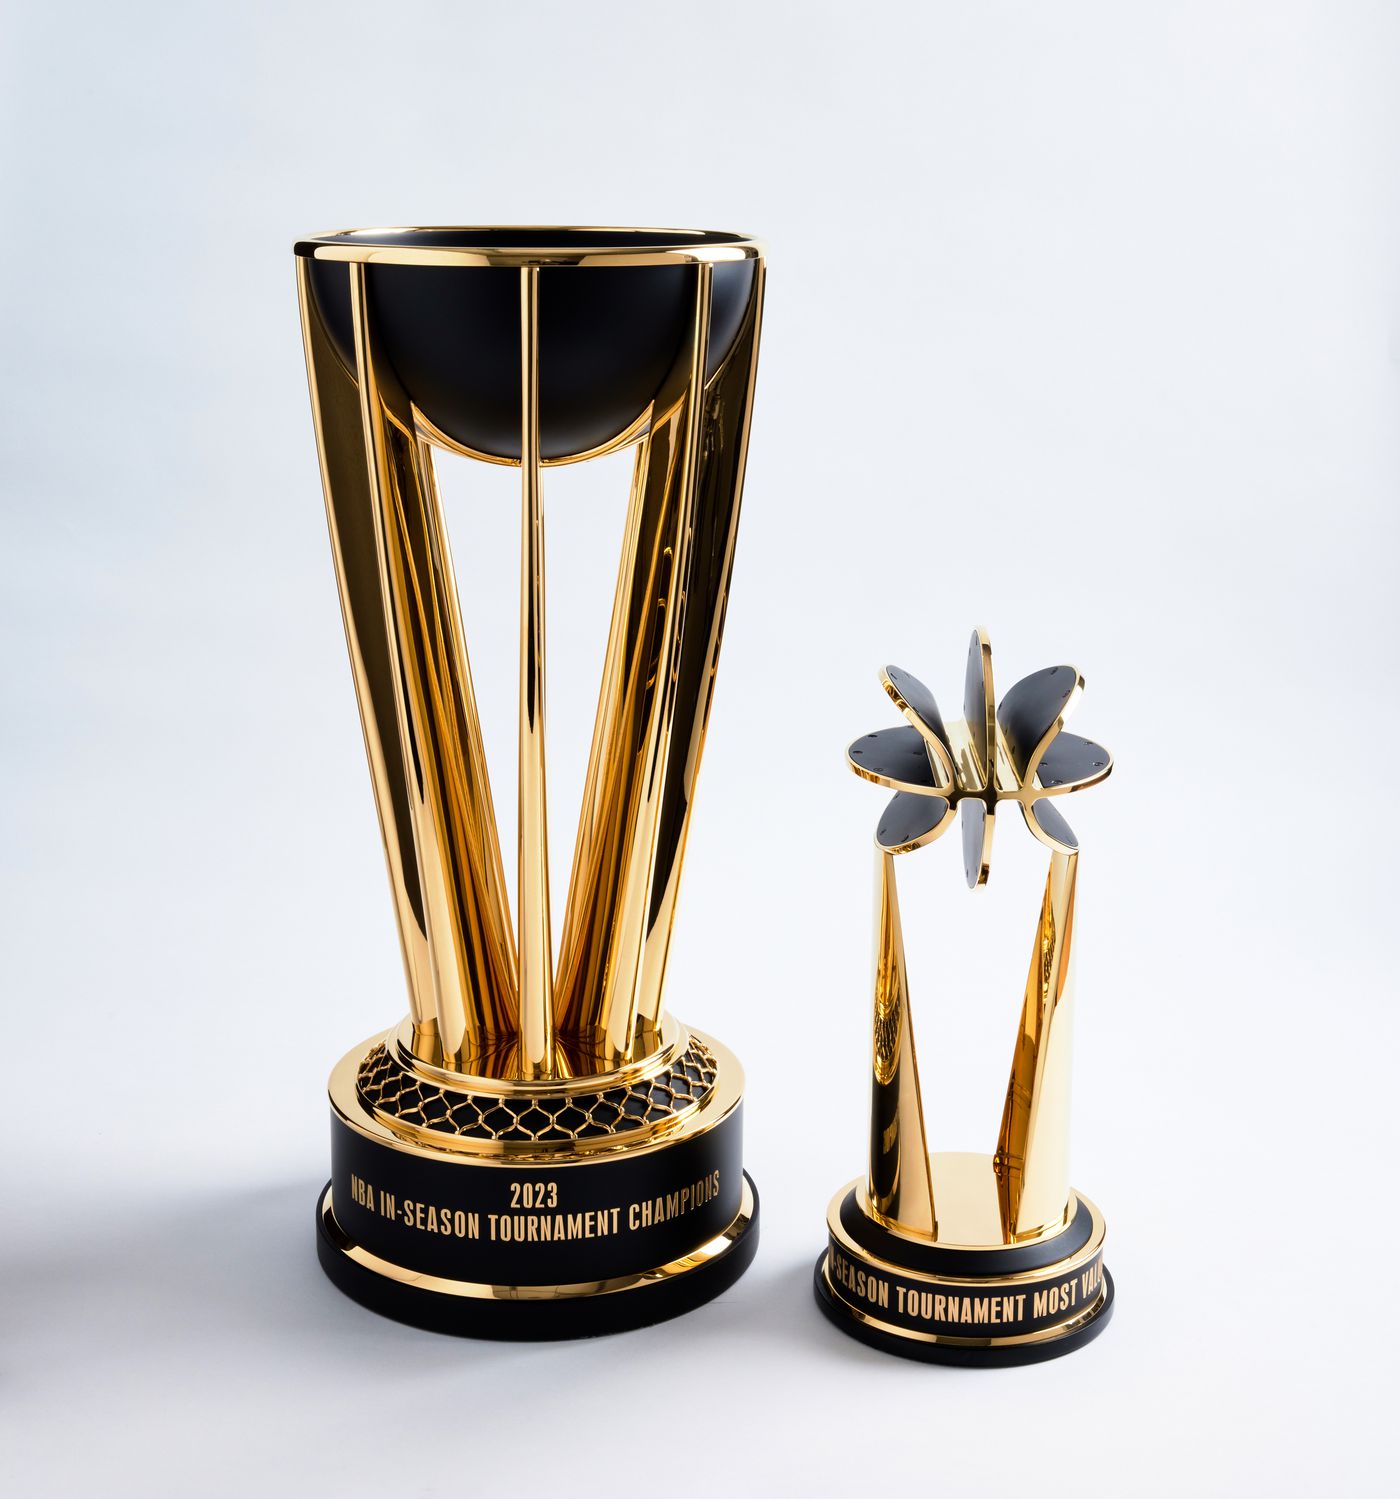 nba in-season tournament prizes: money, awards, explained